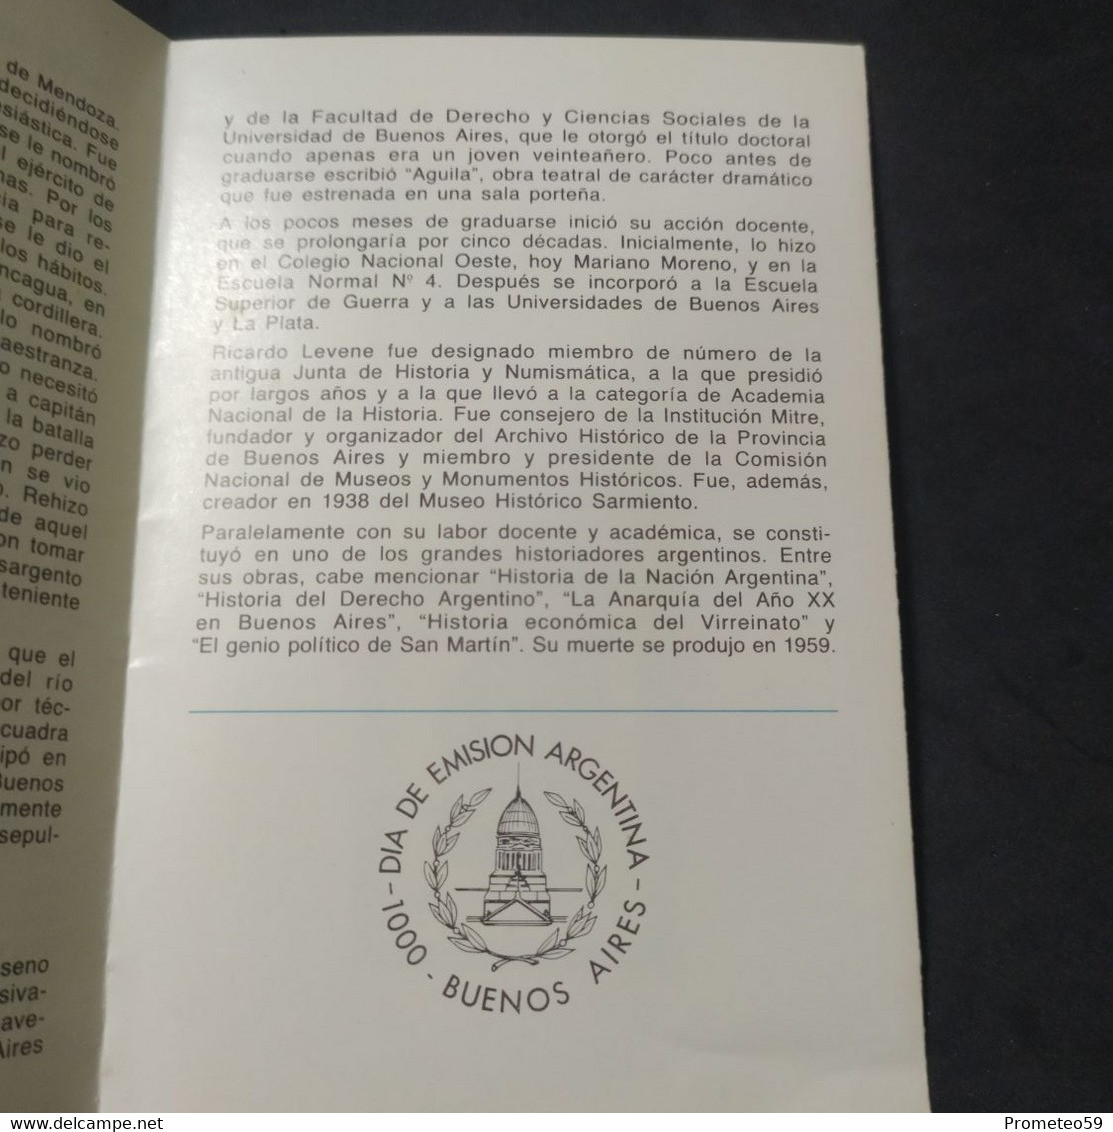 Volante Día De Emisión – Temas: Personalidad II – 5/10/1985 – Argentina - Cuadernillos